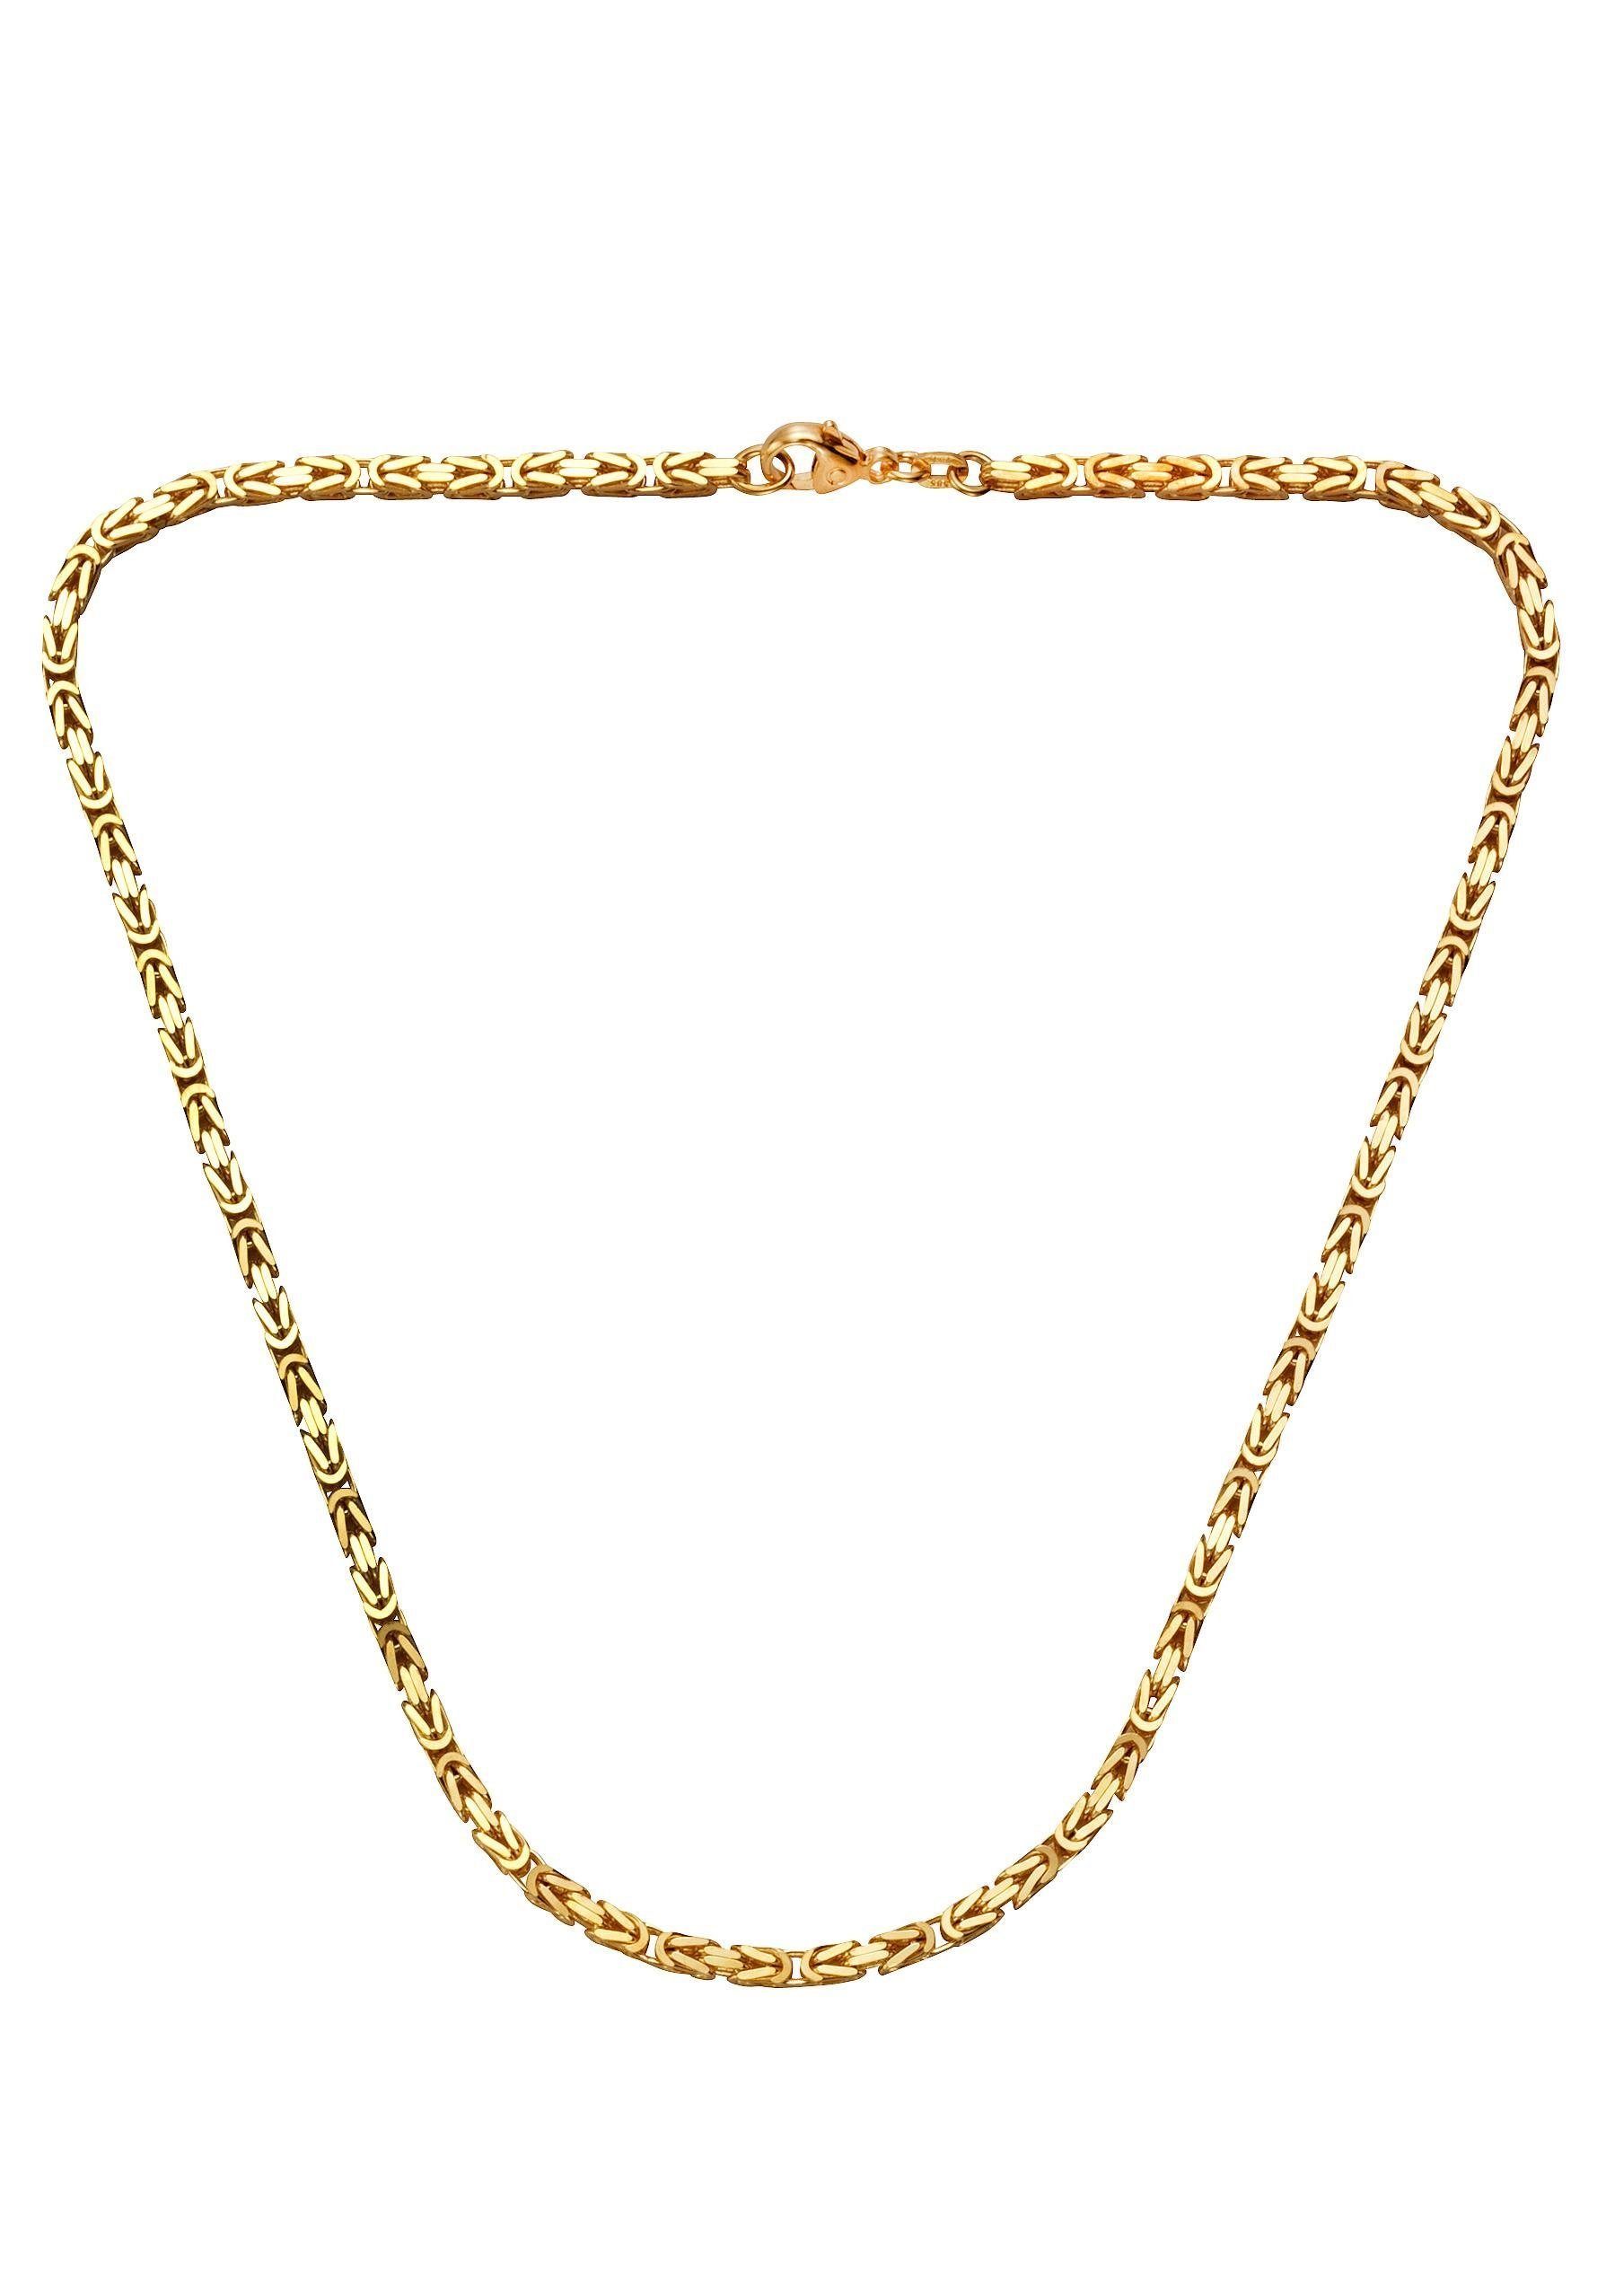 Firetti Collier Schmuck Geschenk Gold 585 Halsschmuck Halskette Goldkette Königskette, zu Kleid, Shirt, Jeans, Sneaker! Anlass Geburtstag Weihnachten